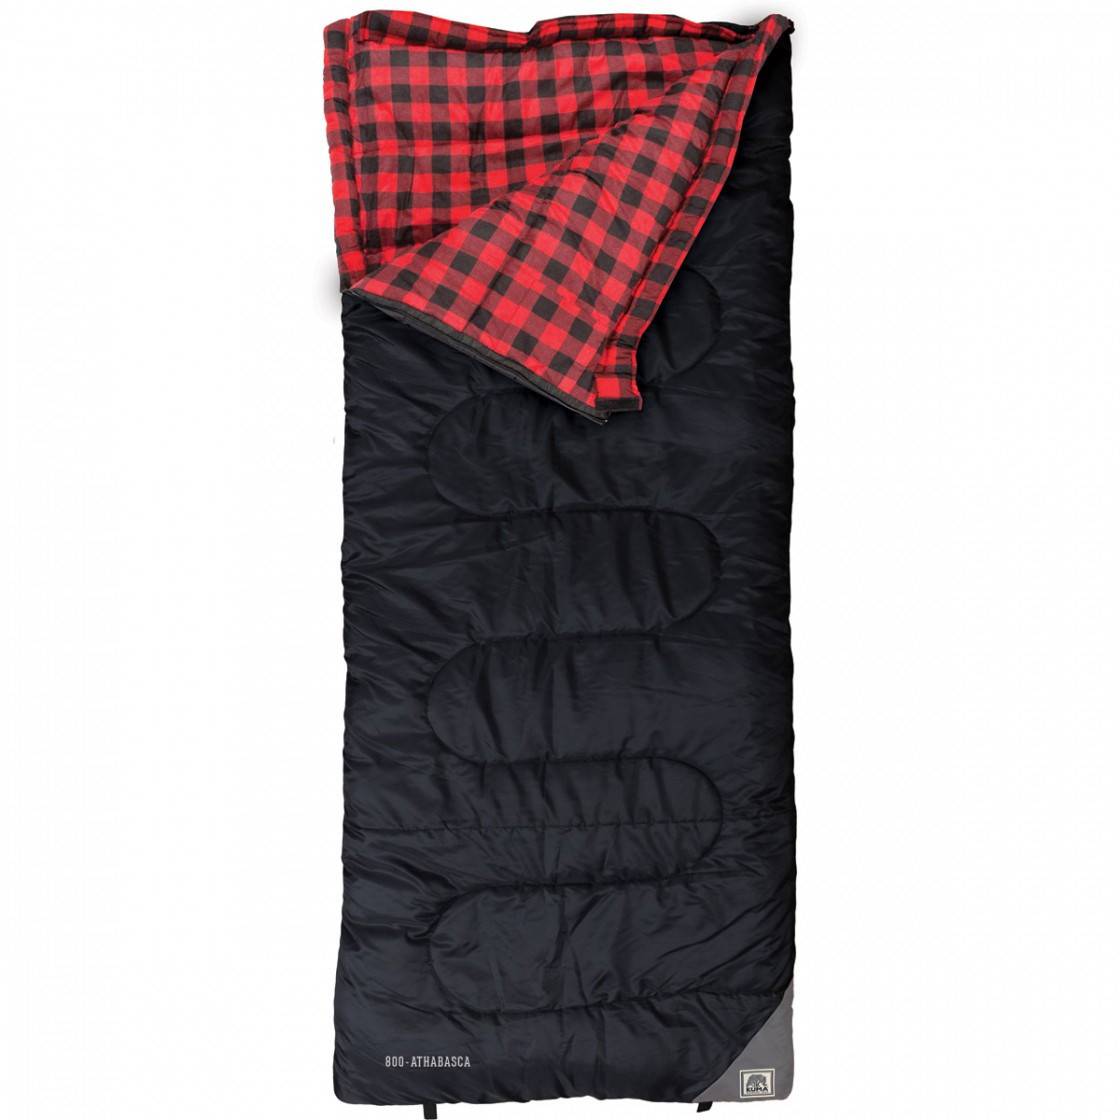 Kuma Outdoor Athabasca -8C Sleeping Bag